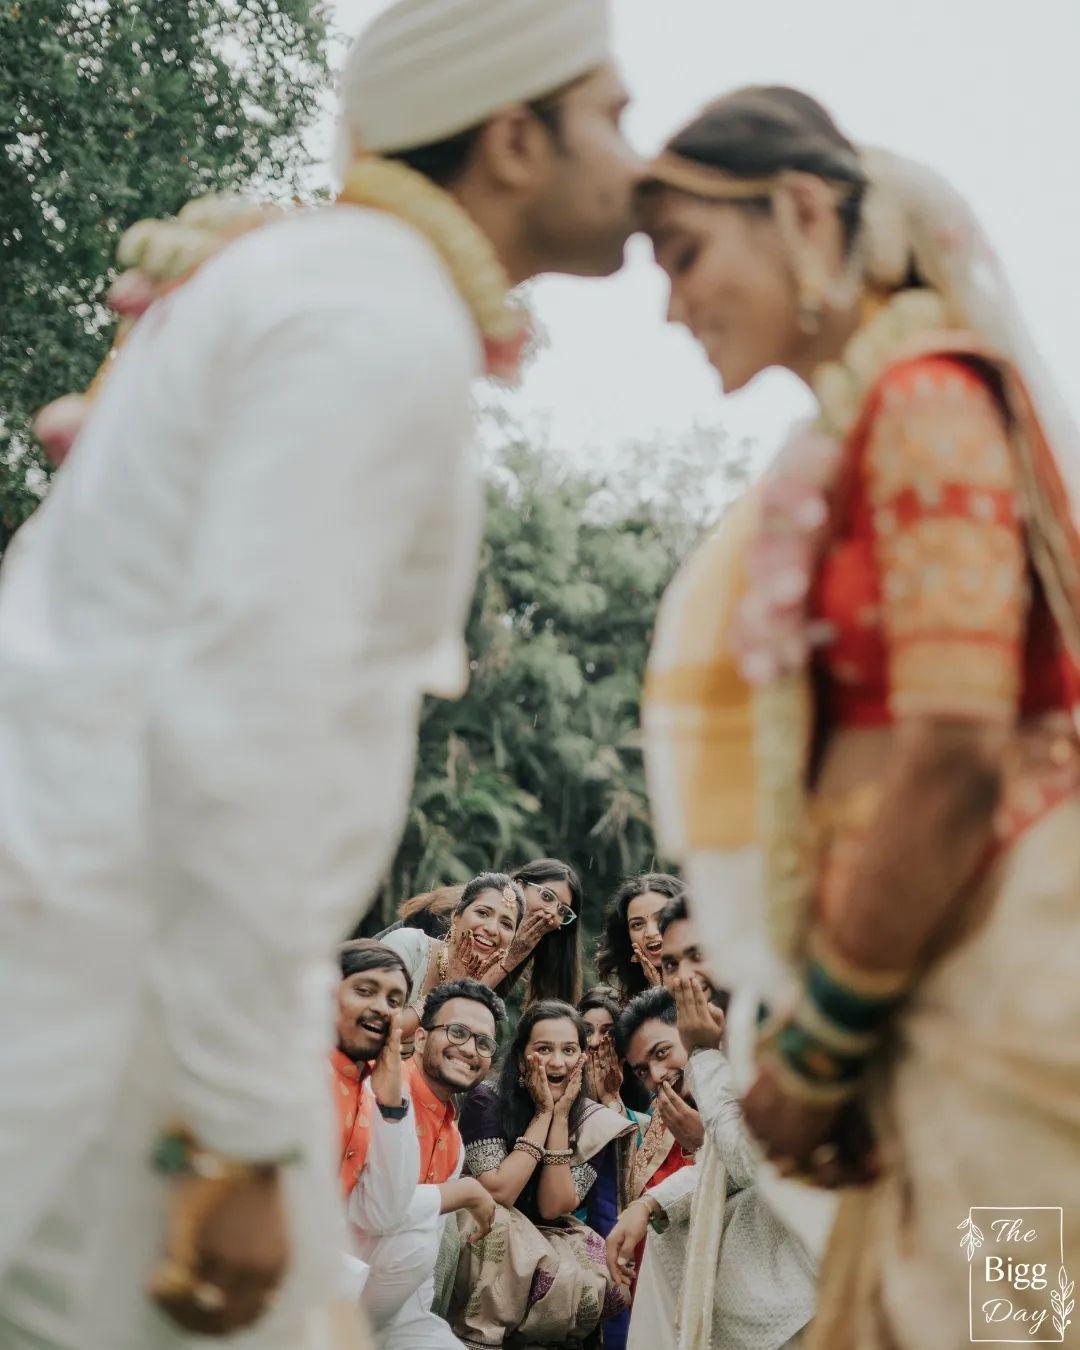 Wedding dulha dulhan pose | Indian bride poses, Wedding couple poses  photography, Bride photography poses